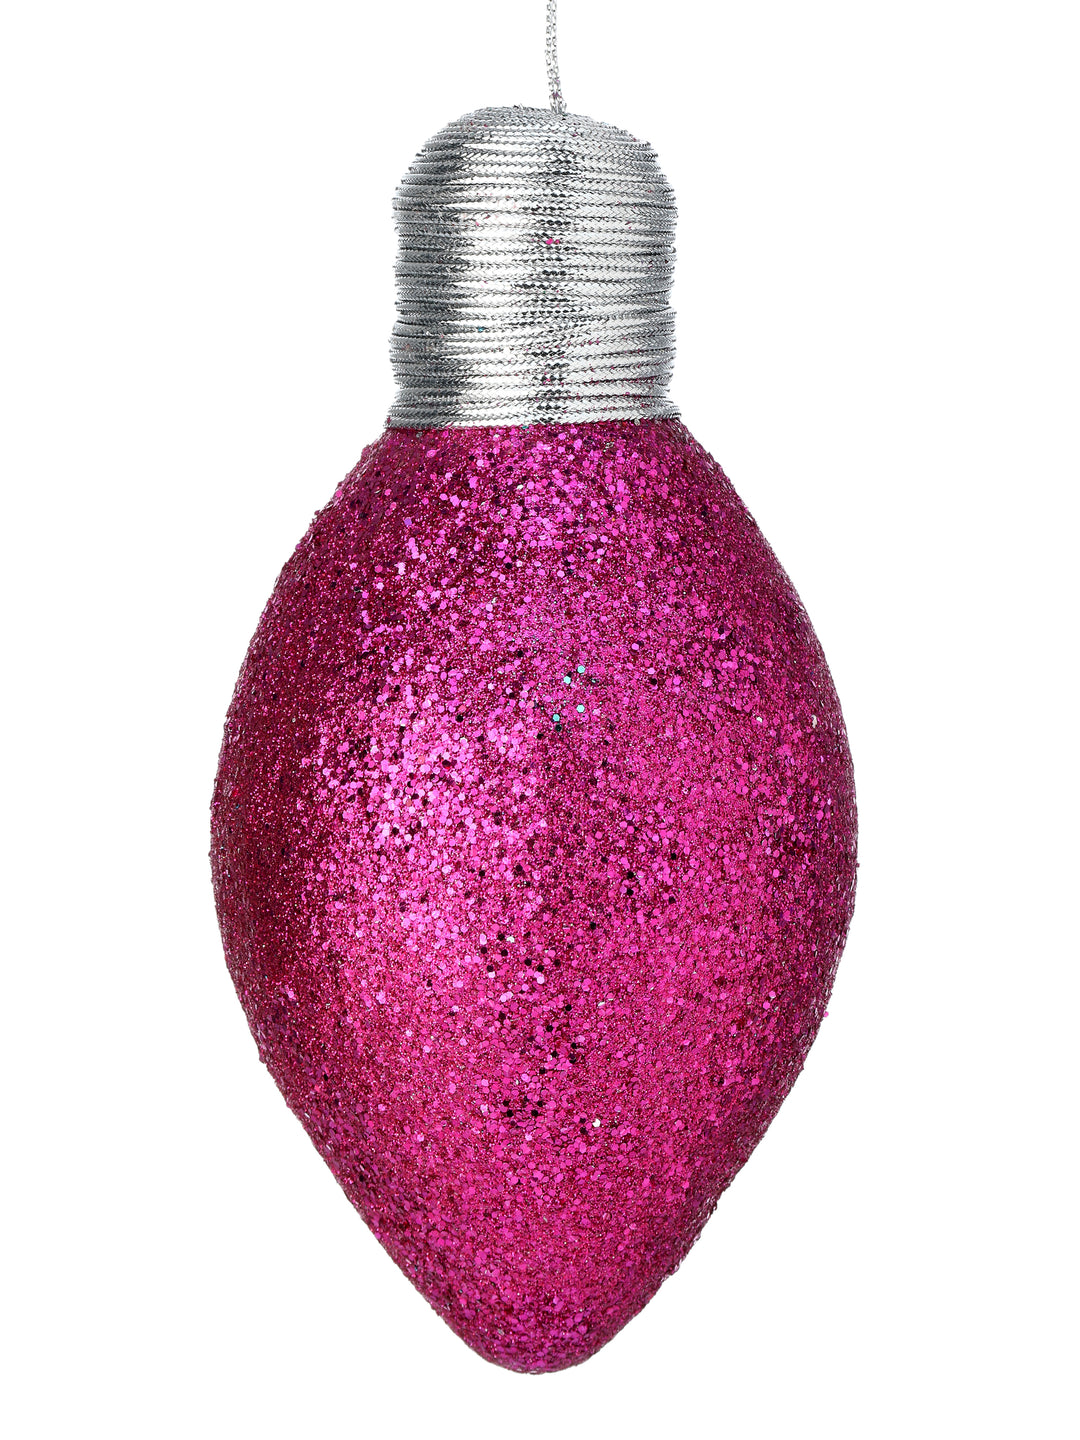 (2) Regency 7" Glitter Light Bulb Ornament in Hot Pink - set of 2